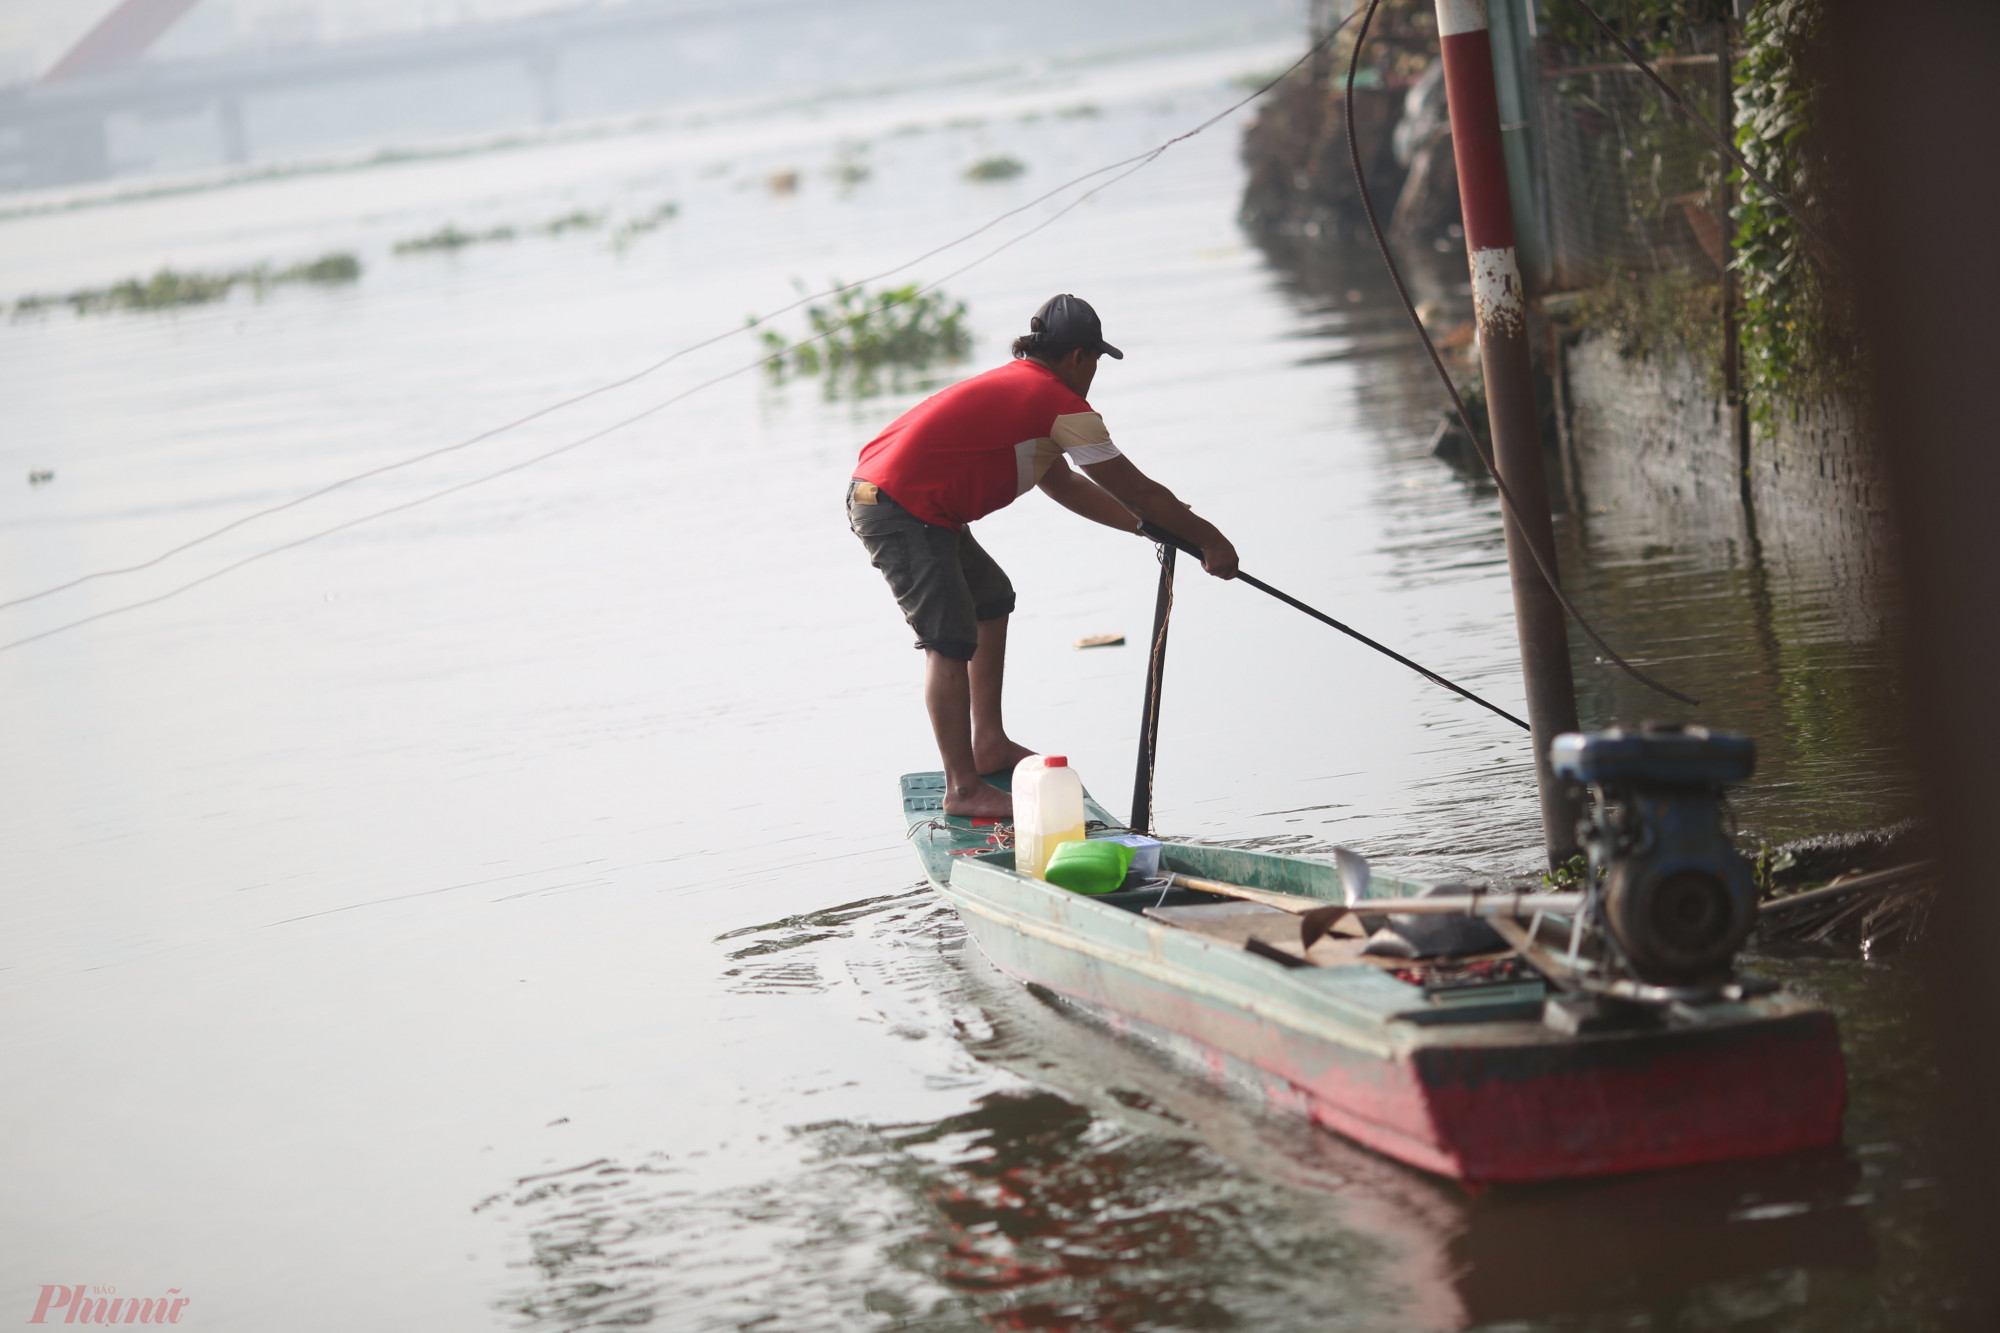 Tuy nhiên, dọc bờ sông Sài Gòn luôn có một vài người túc trực trên ghe nhỏ, khi cá vừa thả xuống liền bị chích điện và vớt lên.